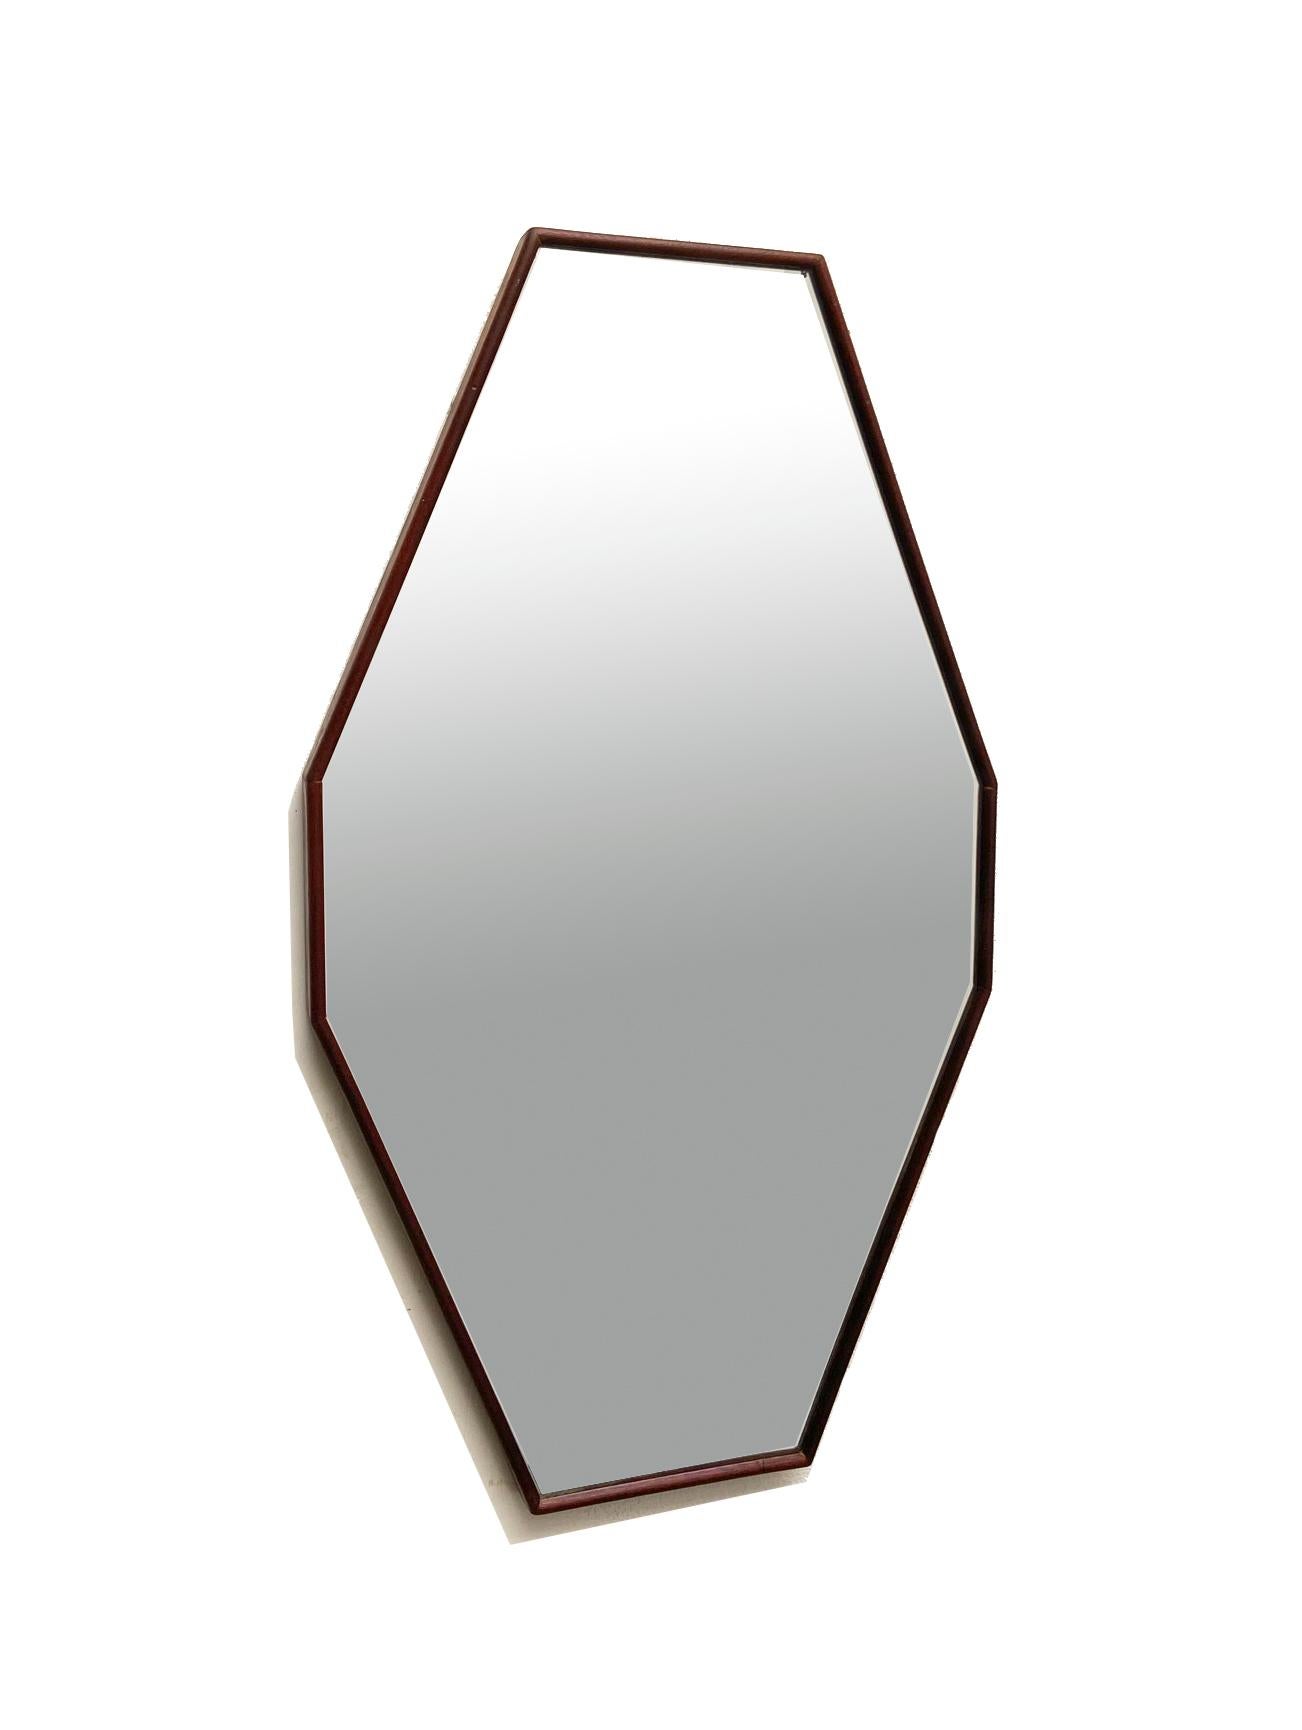 Miroir italien des années 1960, de forme octogonale allongée. 
Cadre en teck, miroir argenté d'origine. 
Très bon état. Signes naturels de vieillissement.